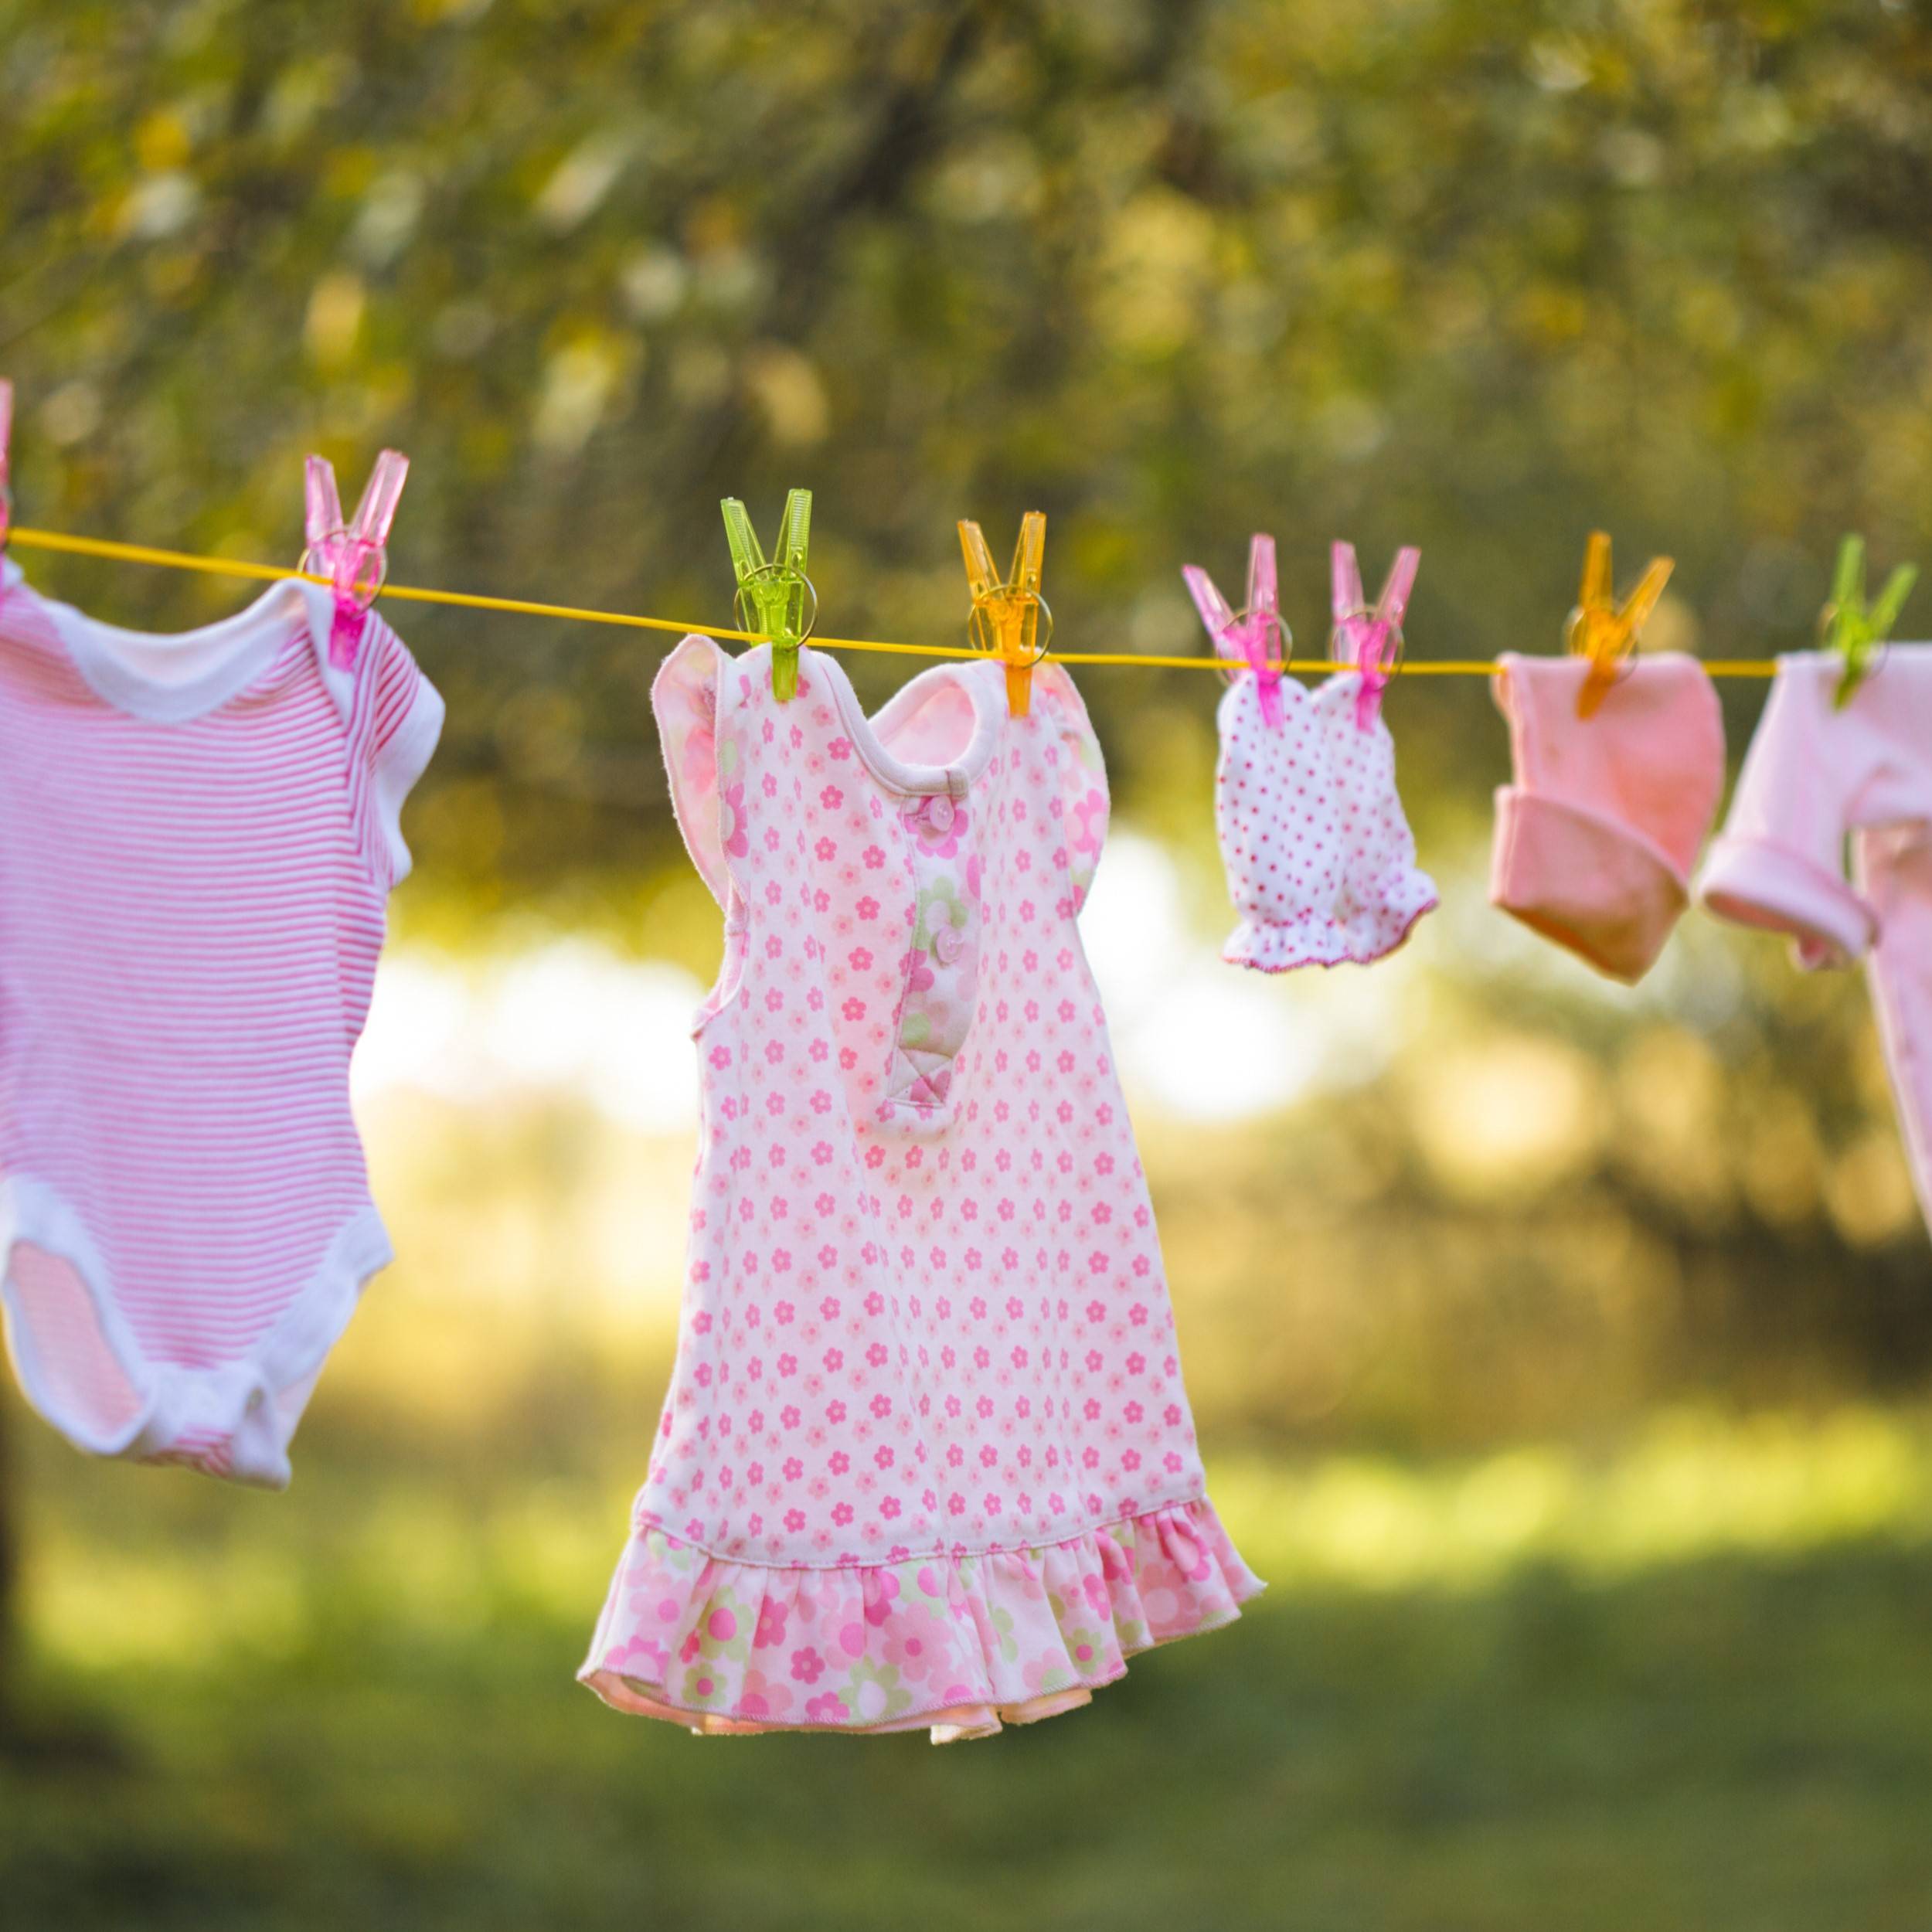 Pranie ubrań niemowlęcych – jak długo stosować reguły?